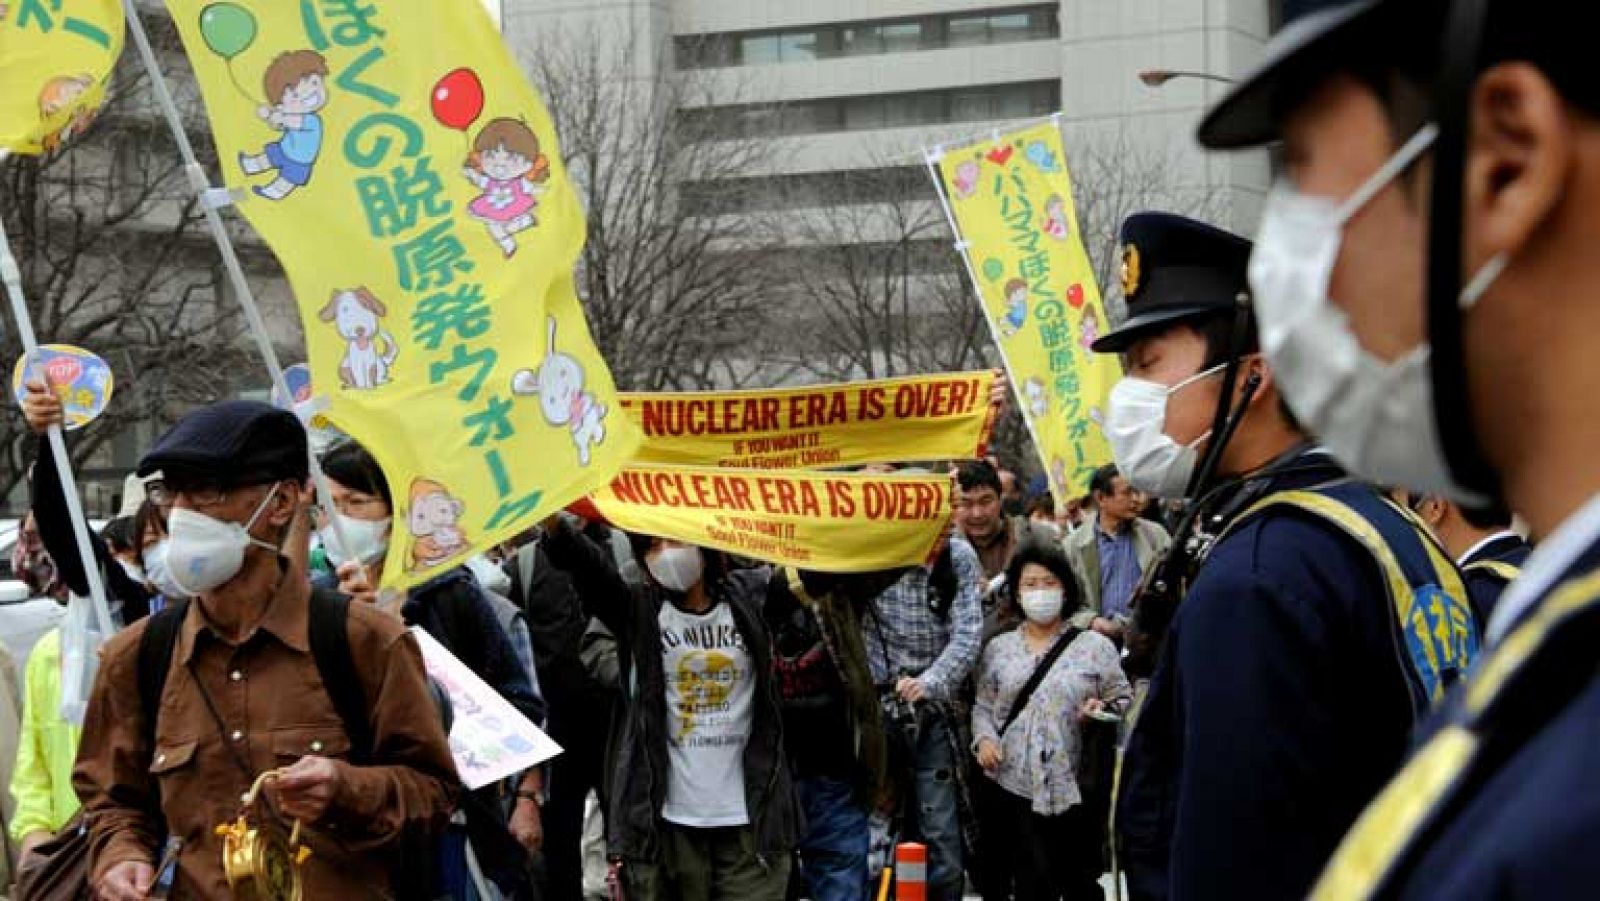  En Japón, cientos de personas han salido a las calles de Tokio, para pedir el cierre de las centrales nucleares, cuando se cumple el segundo aniversario de la tragedia de Fukushima. Ahora, el gobierno japonés ha ordenado crear una comisión para acelerar el desmantelamiento de los seis reactores de Fukushima 1, un trabajo lento e inseguro, hasta que los niveles de radiación no disminuyan. De hecho, sigue habiendo una zona de exclusión de 30 kilómetros en torno a la central.